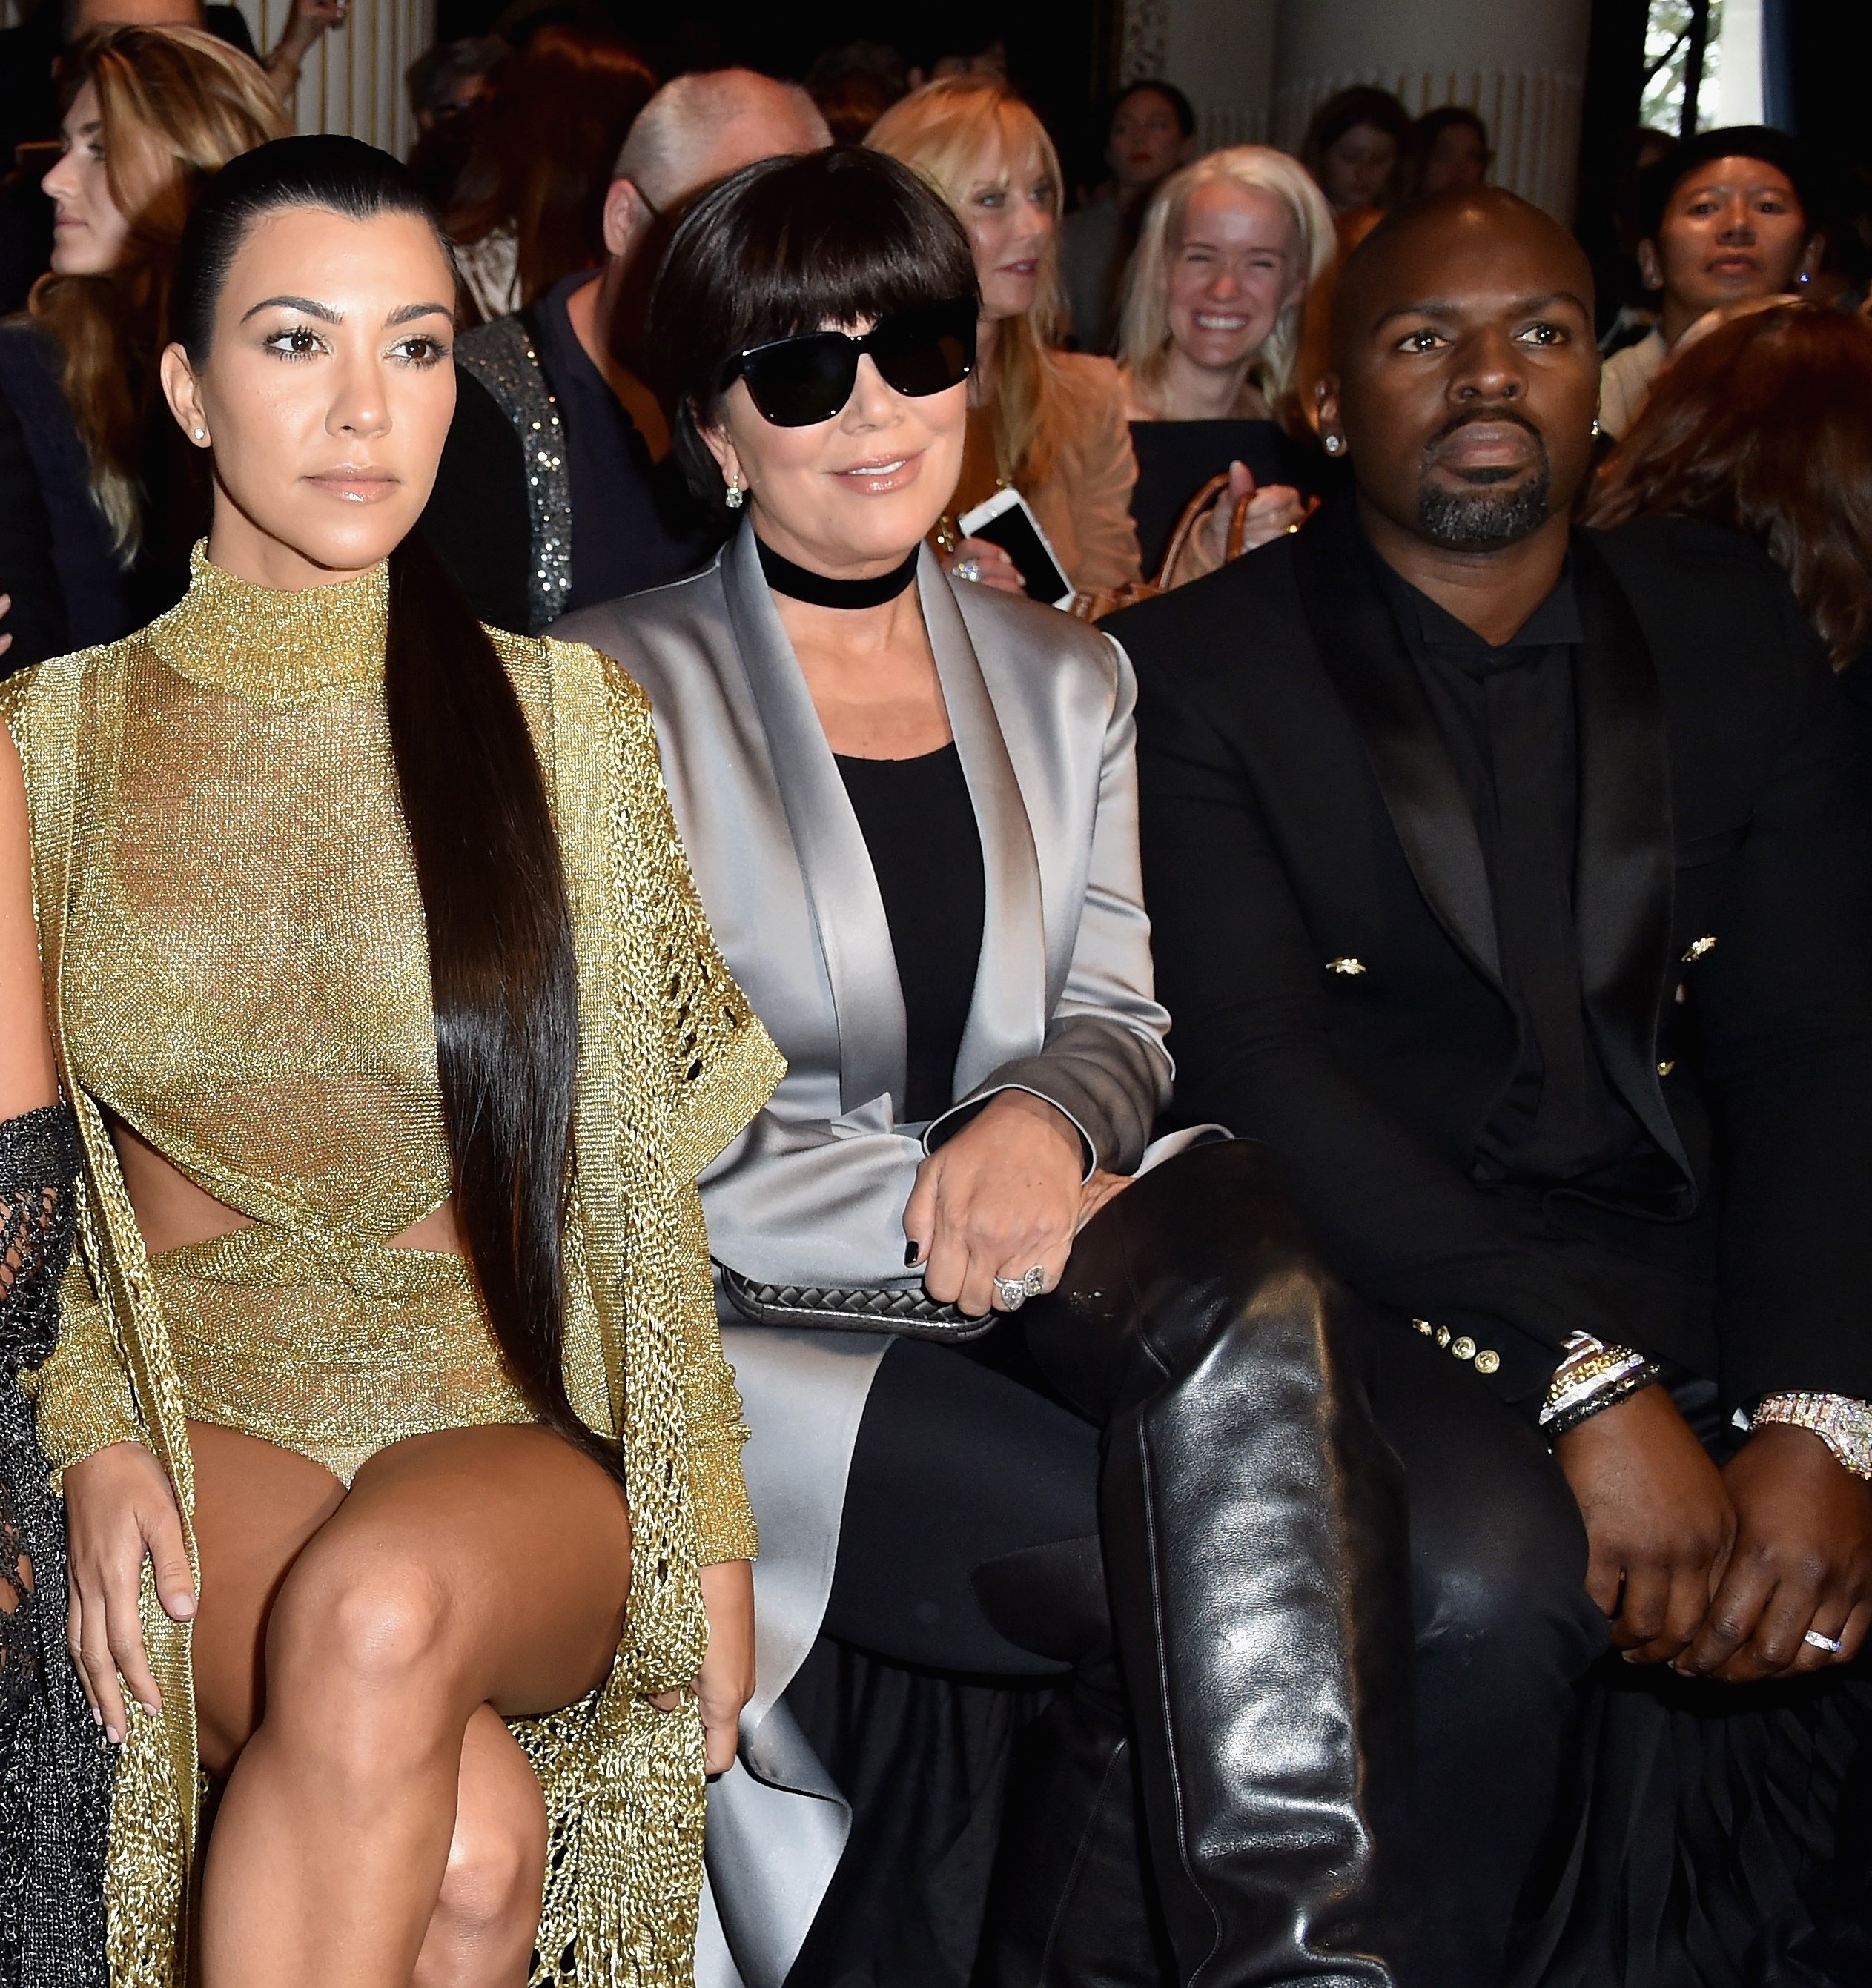 L-R) Kourtney Kardashian, Kris Jenner, and Corey Gamble